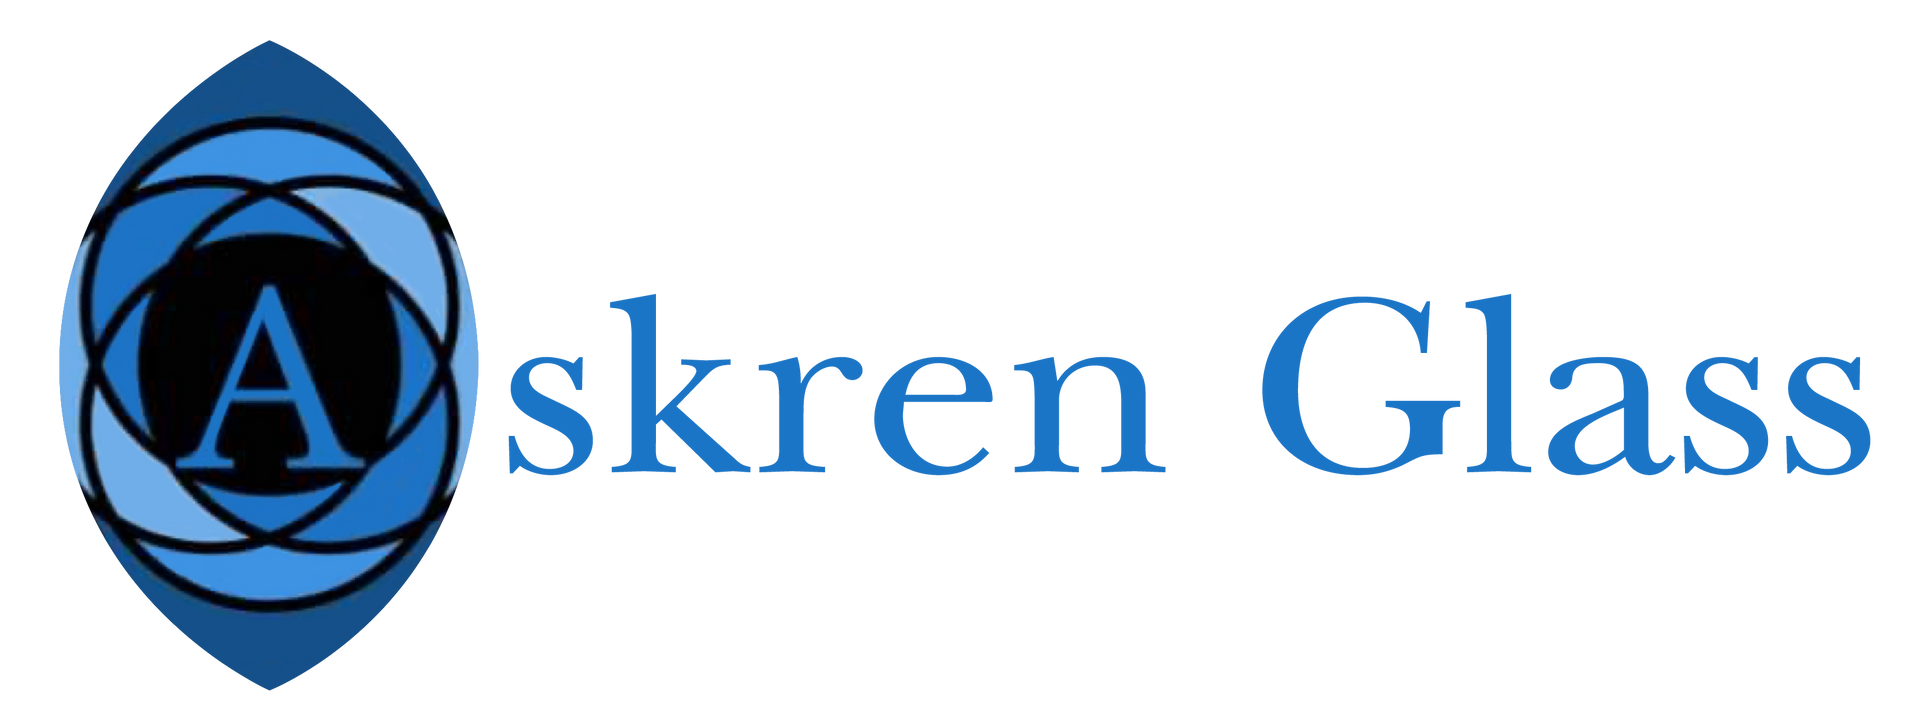 Askren Glass - Logo